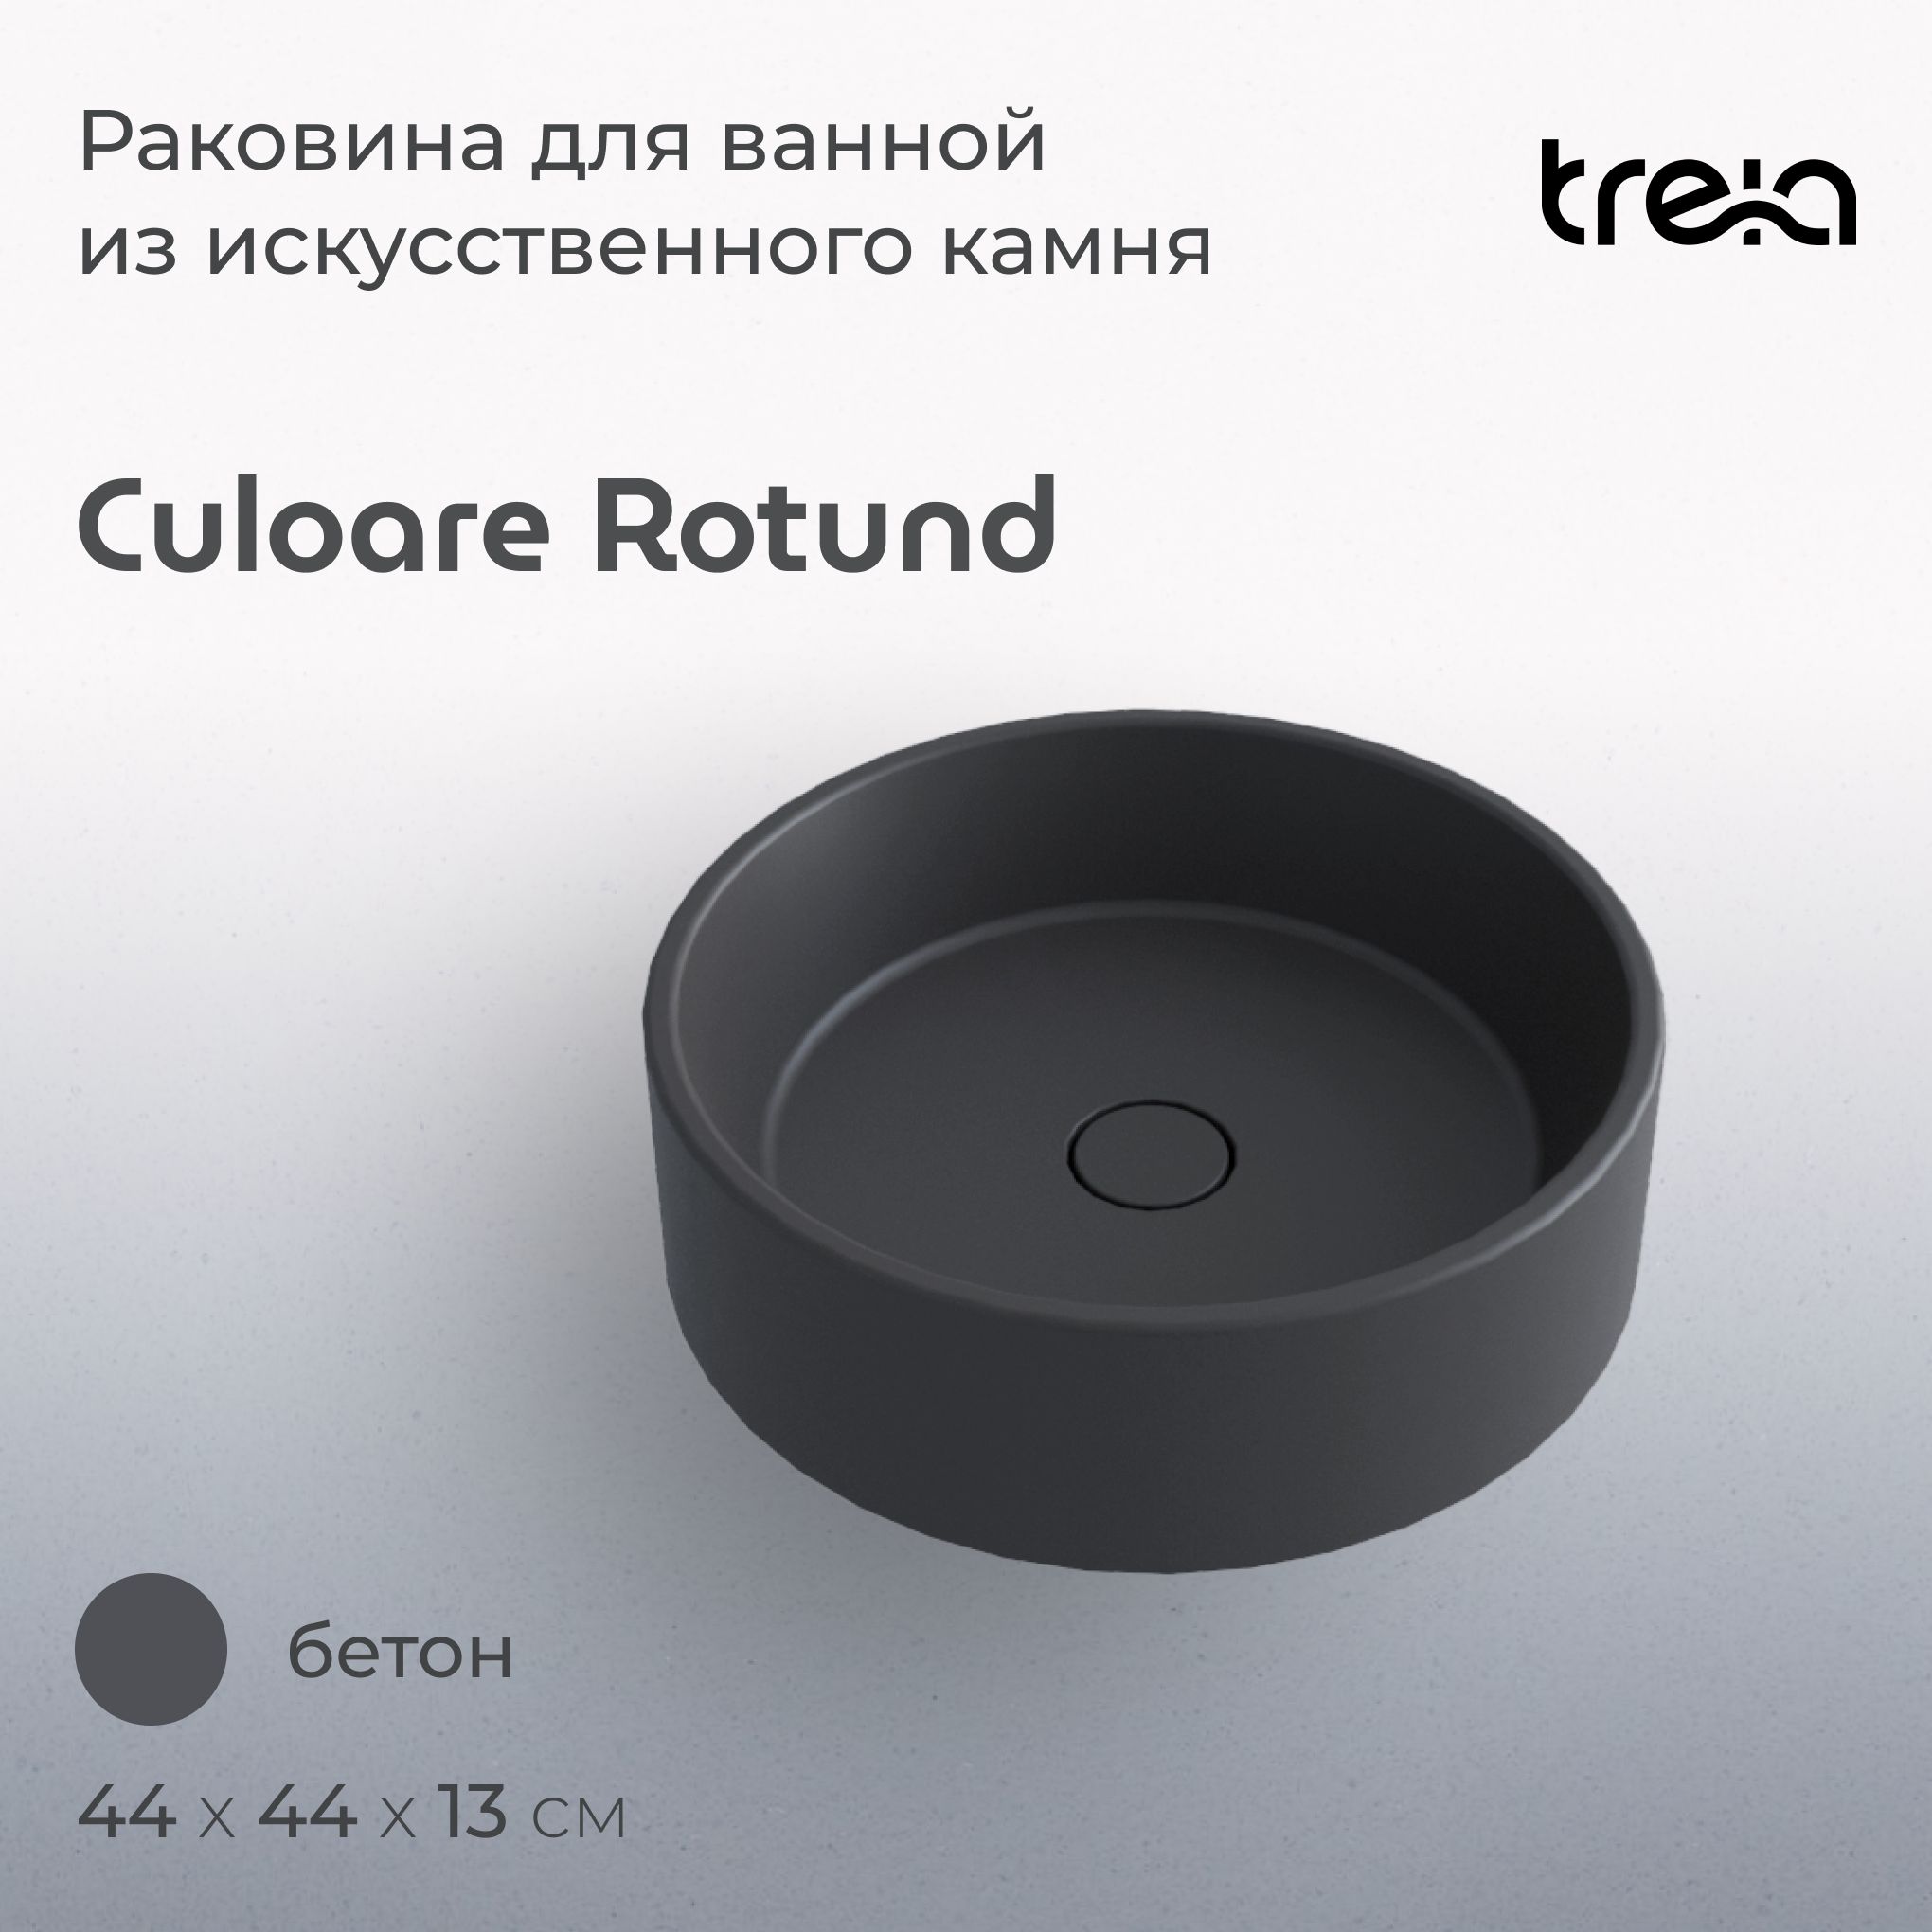 Накладная раковина круглая TREIA Culoare Rotund 440-05-Q, цвет бетон (серая) философия войны и мира насилия и ненасилия